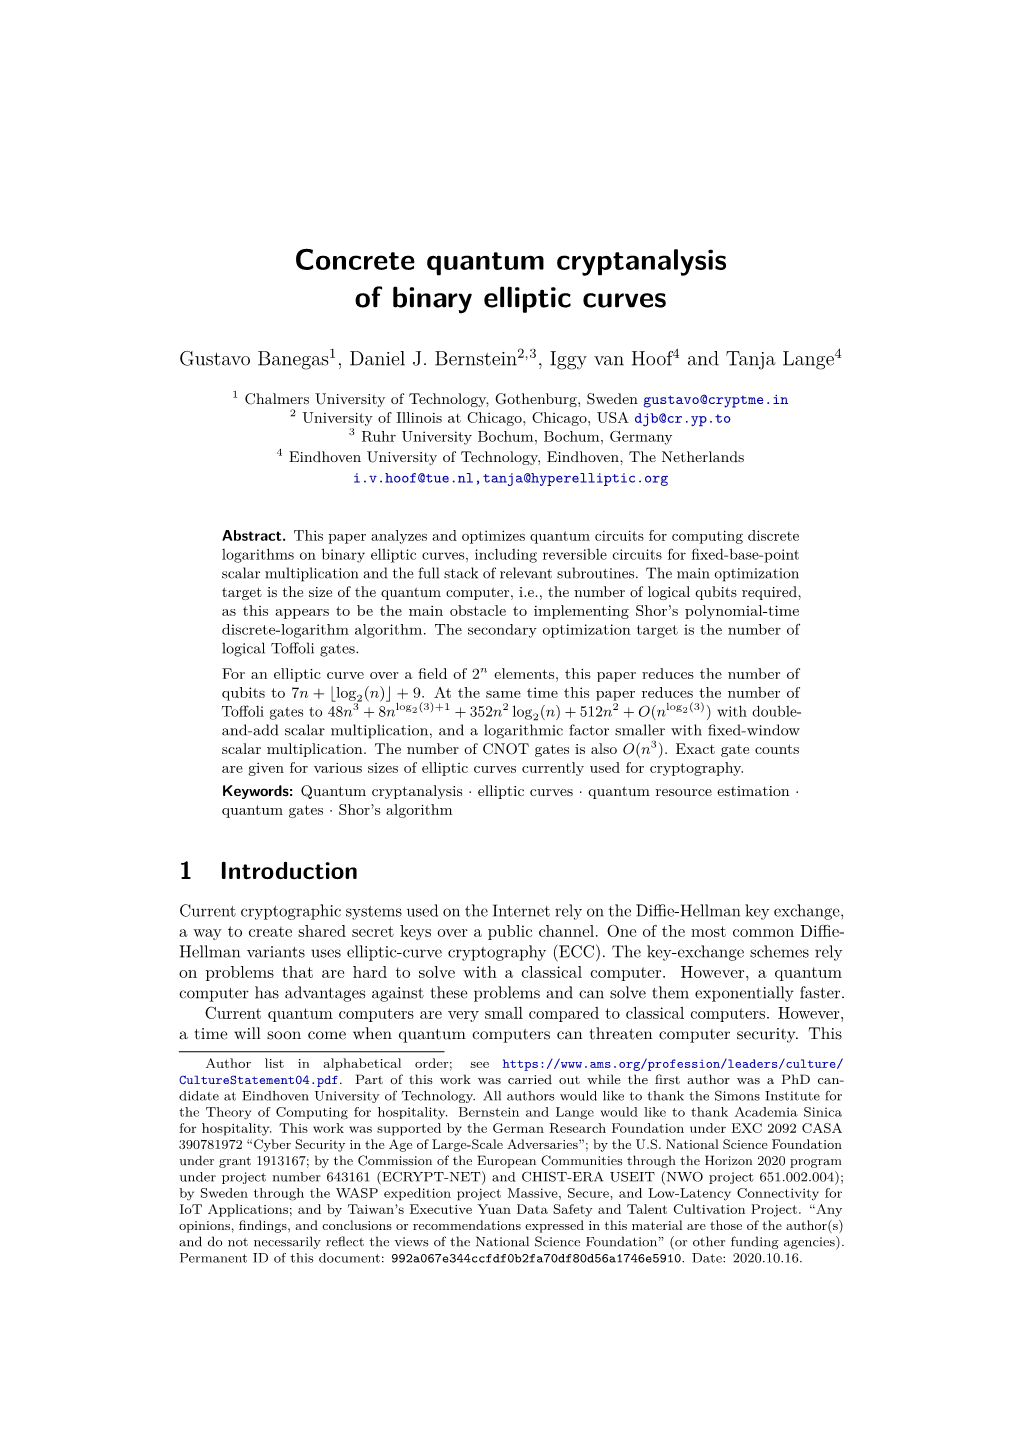 Concrete Quantum Cryptanalysis of Binary Elliptic Curves